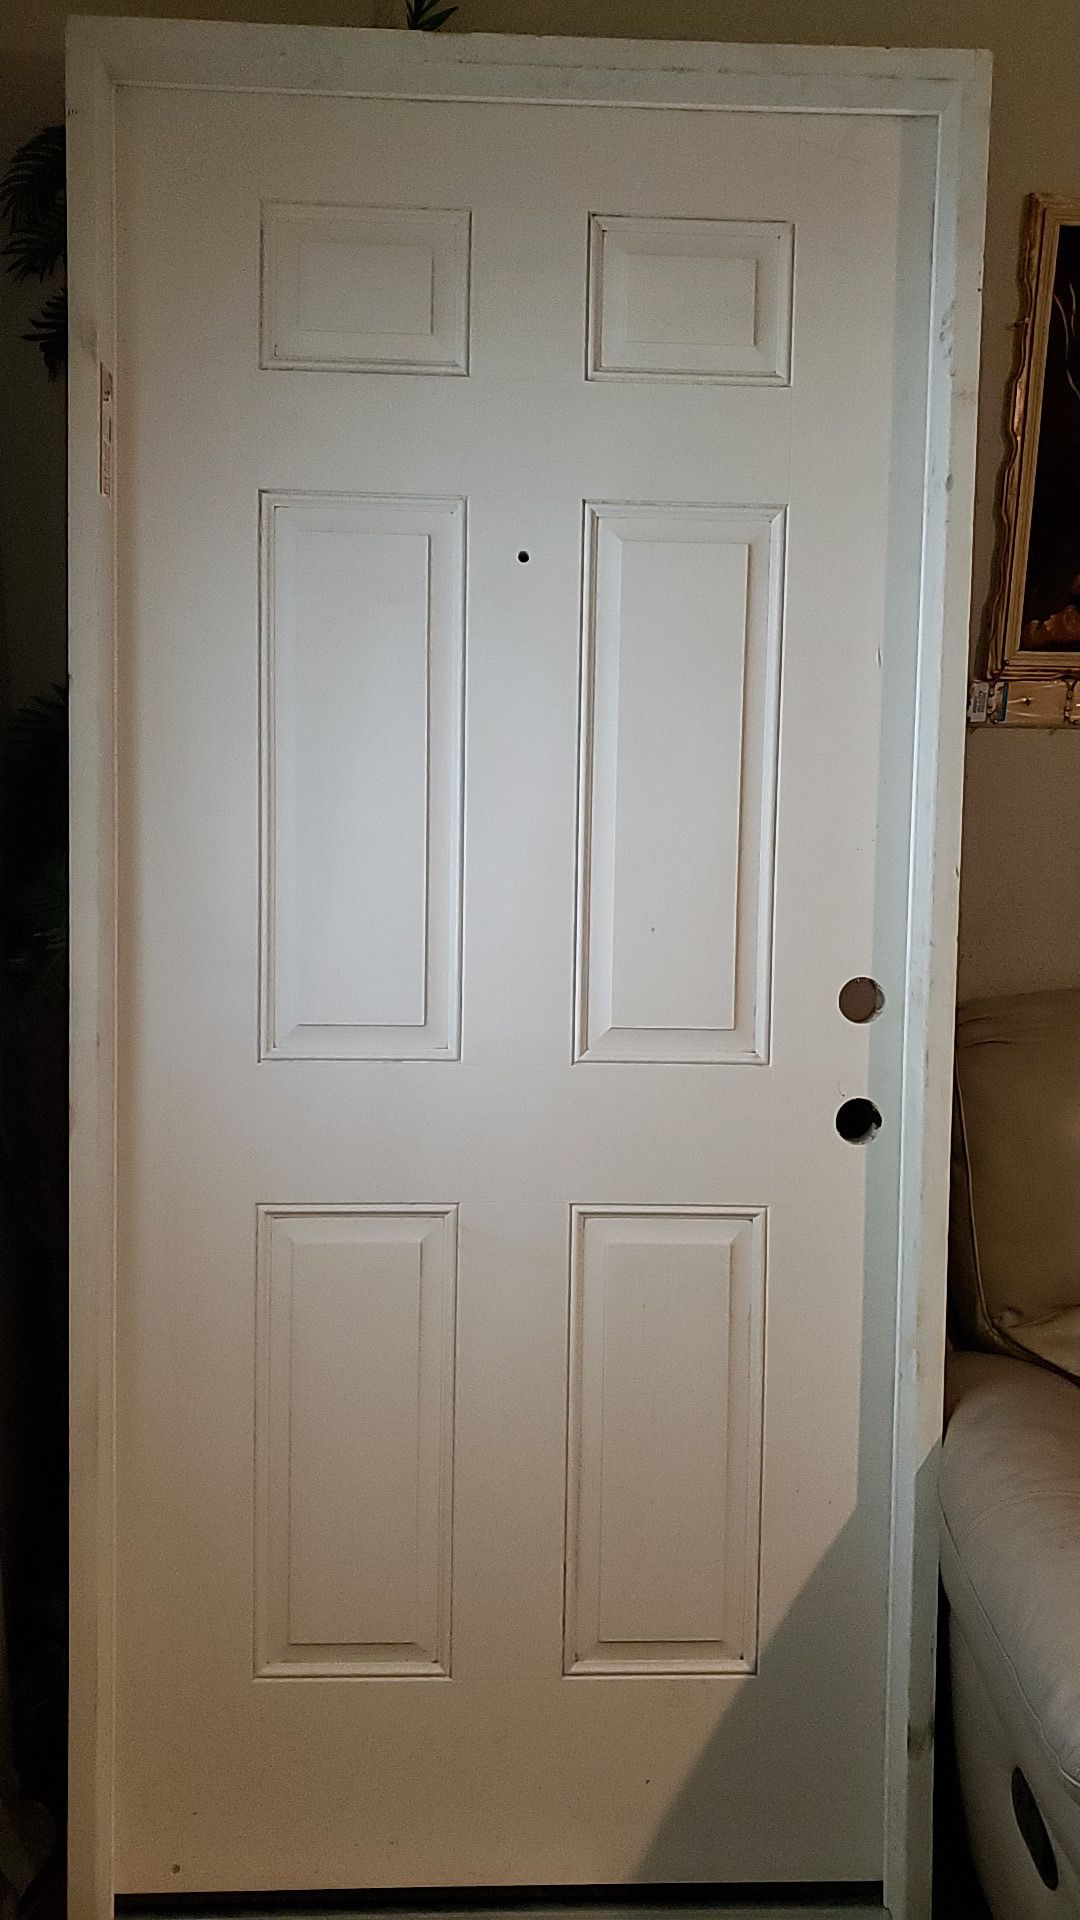 New door